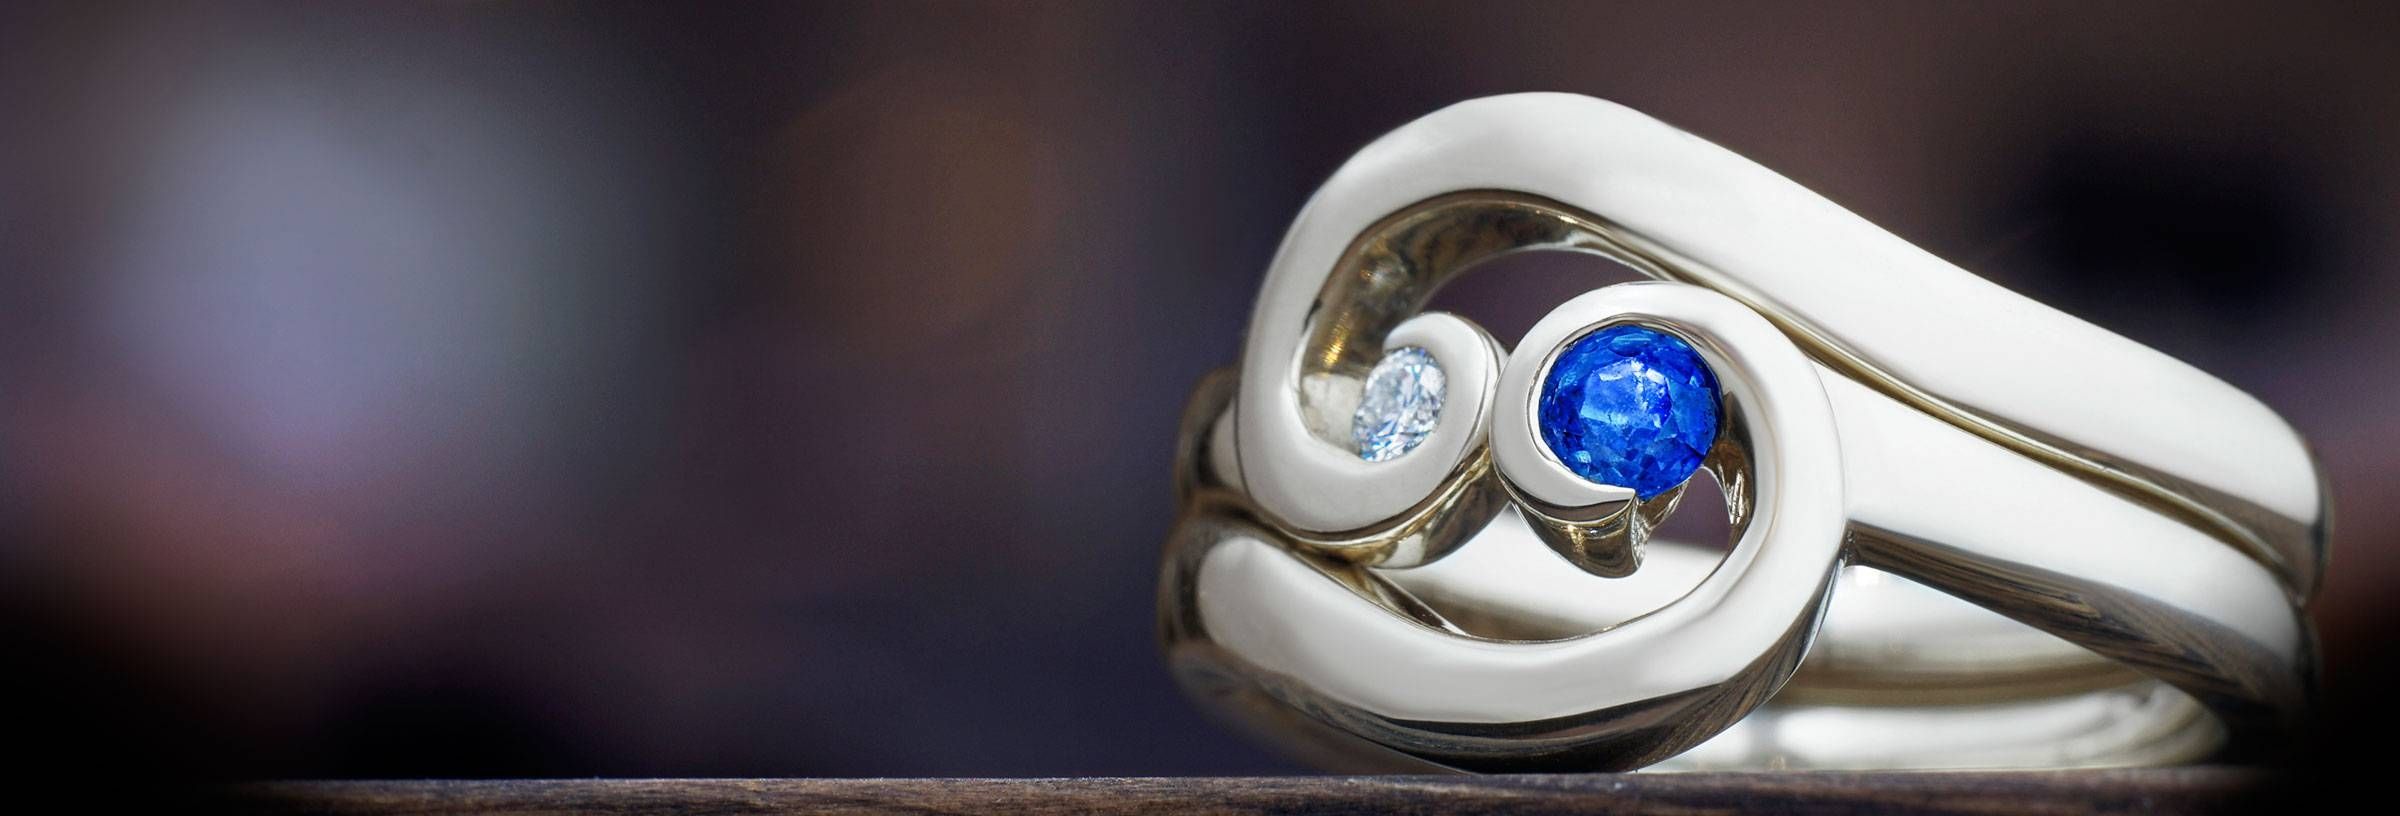 Unusual Wedding Rings | Harriet Kelsall With Unusual Wedding Rings Designs (View 7 of 15)